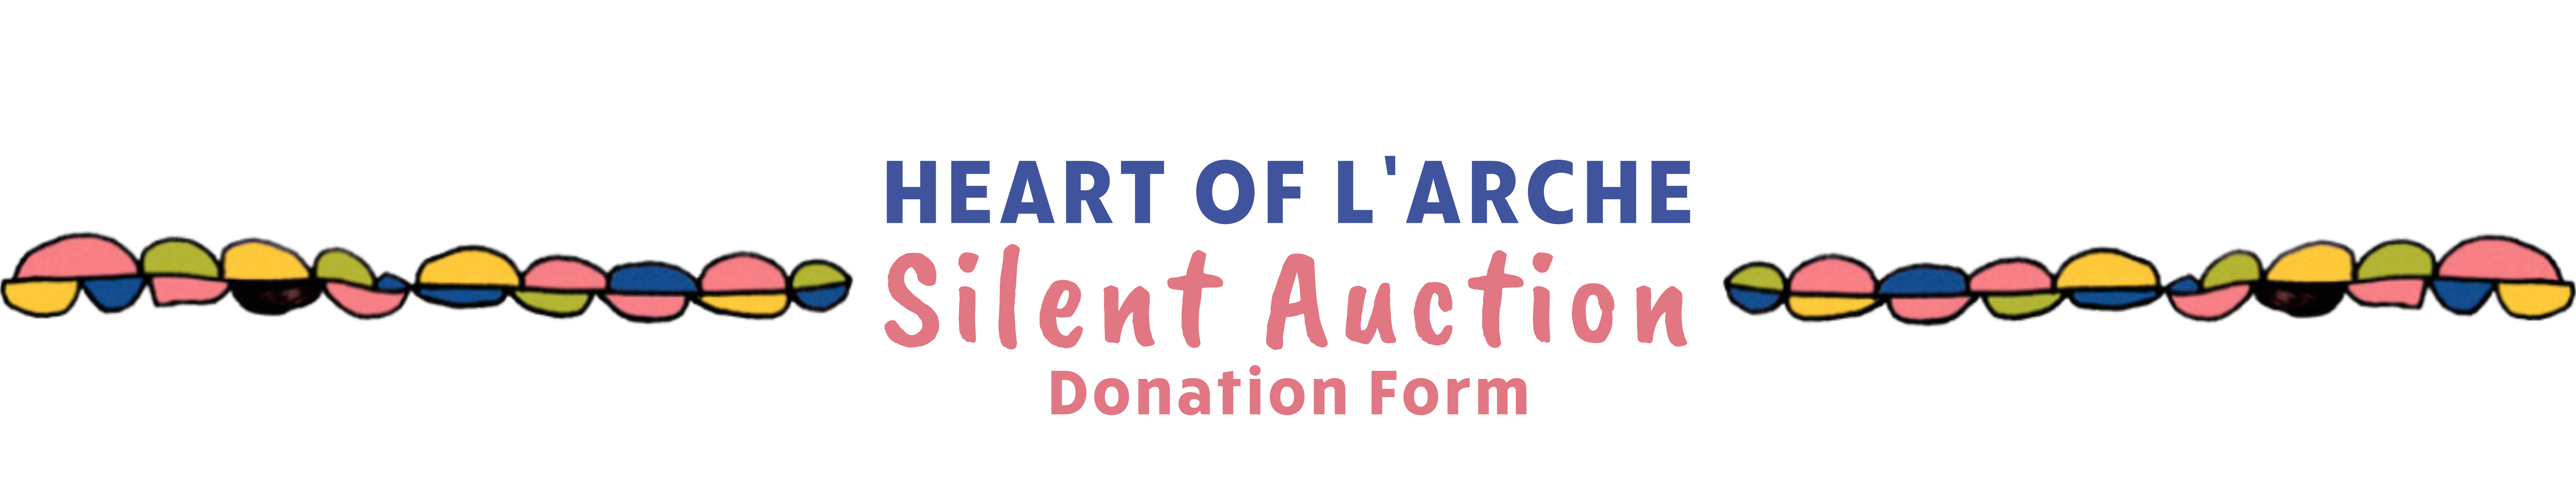 Heart of L'Arche Silent Auction Donation Form